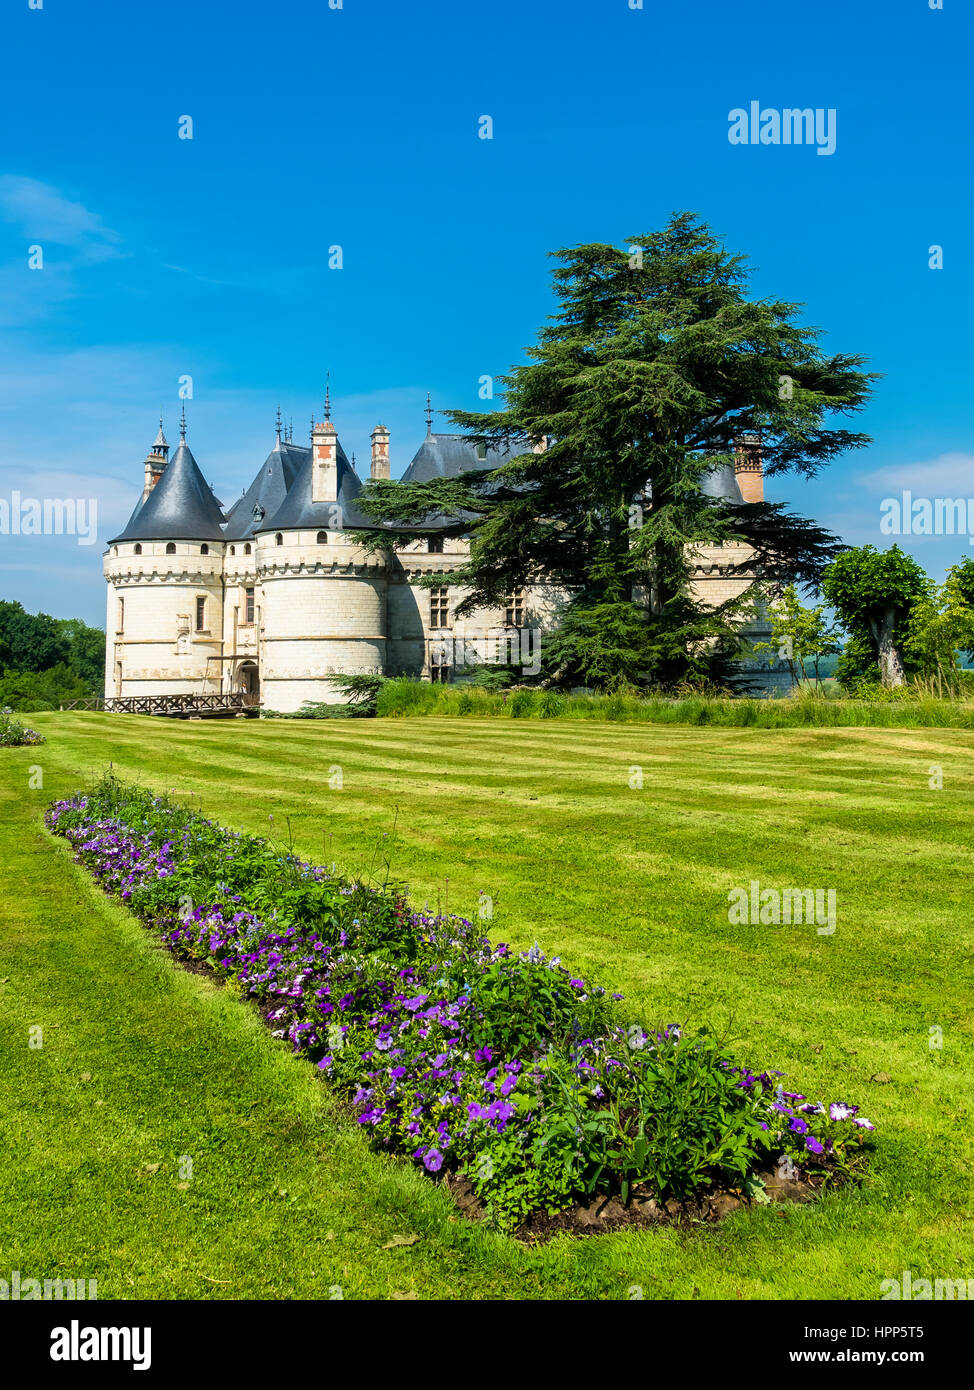 El castillo de Chaumont, Chateau de Chaumont, con jardines de Chaumont-sur-Loire, el departamento de Loir-et-Cher, Francia Foto de stock